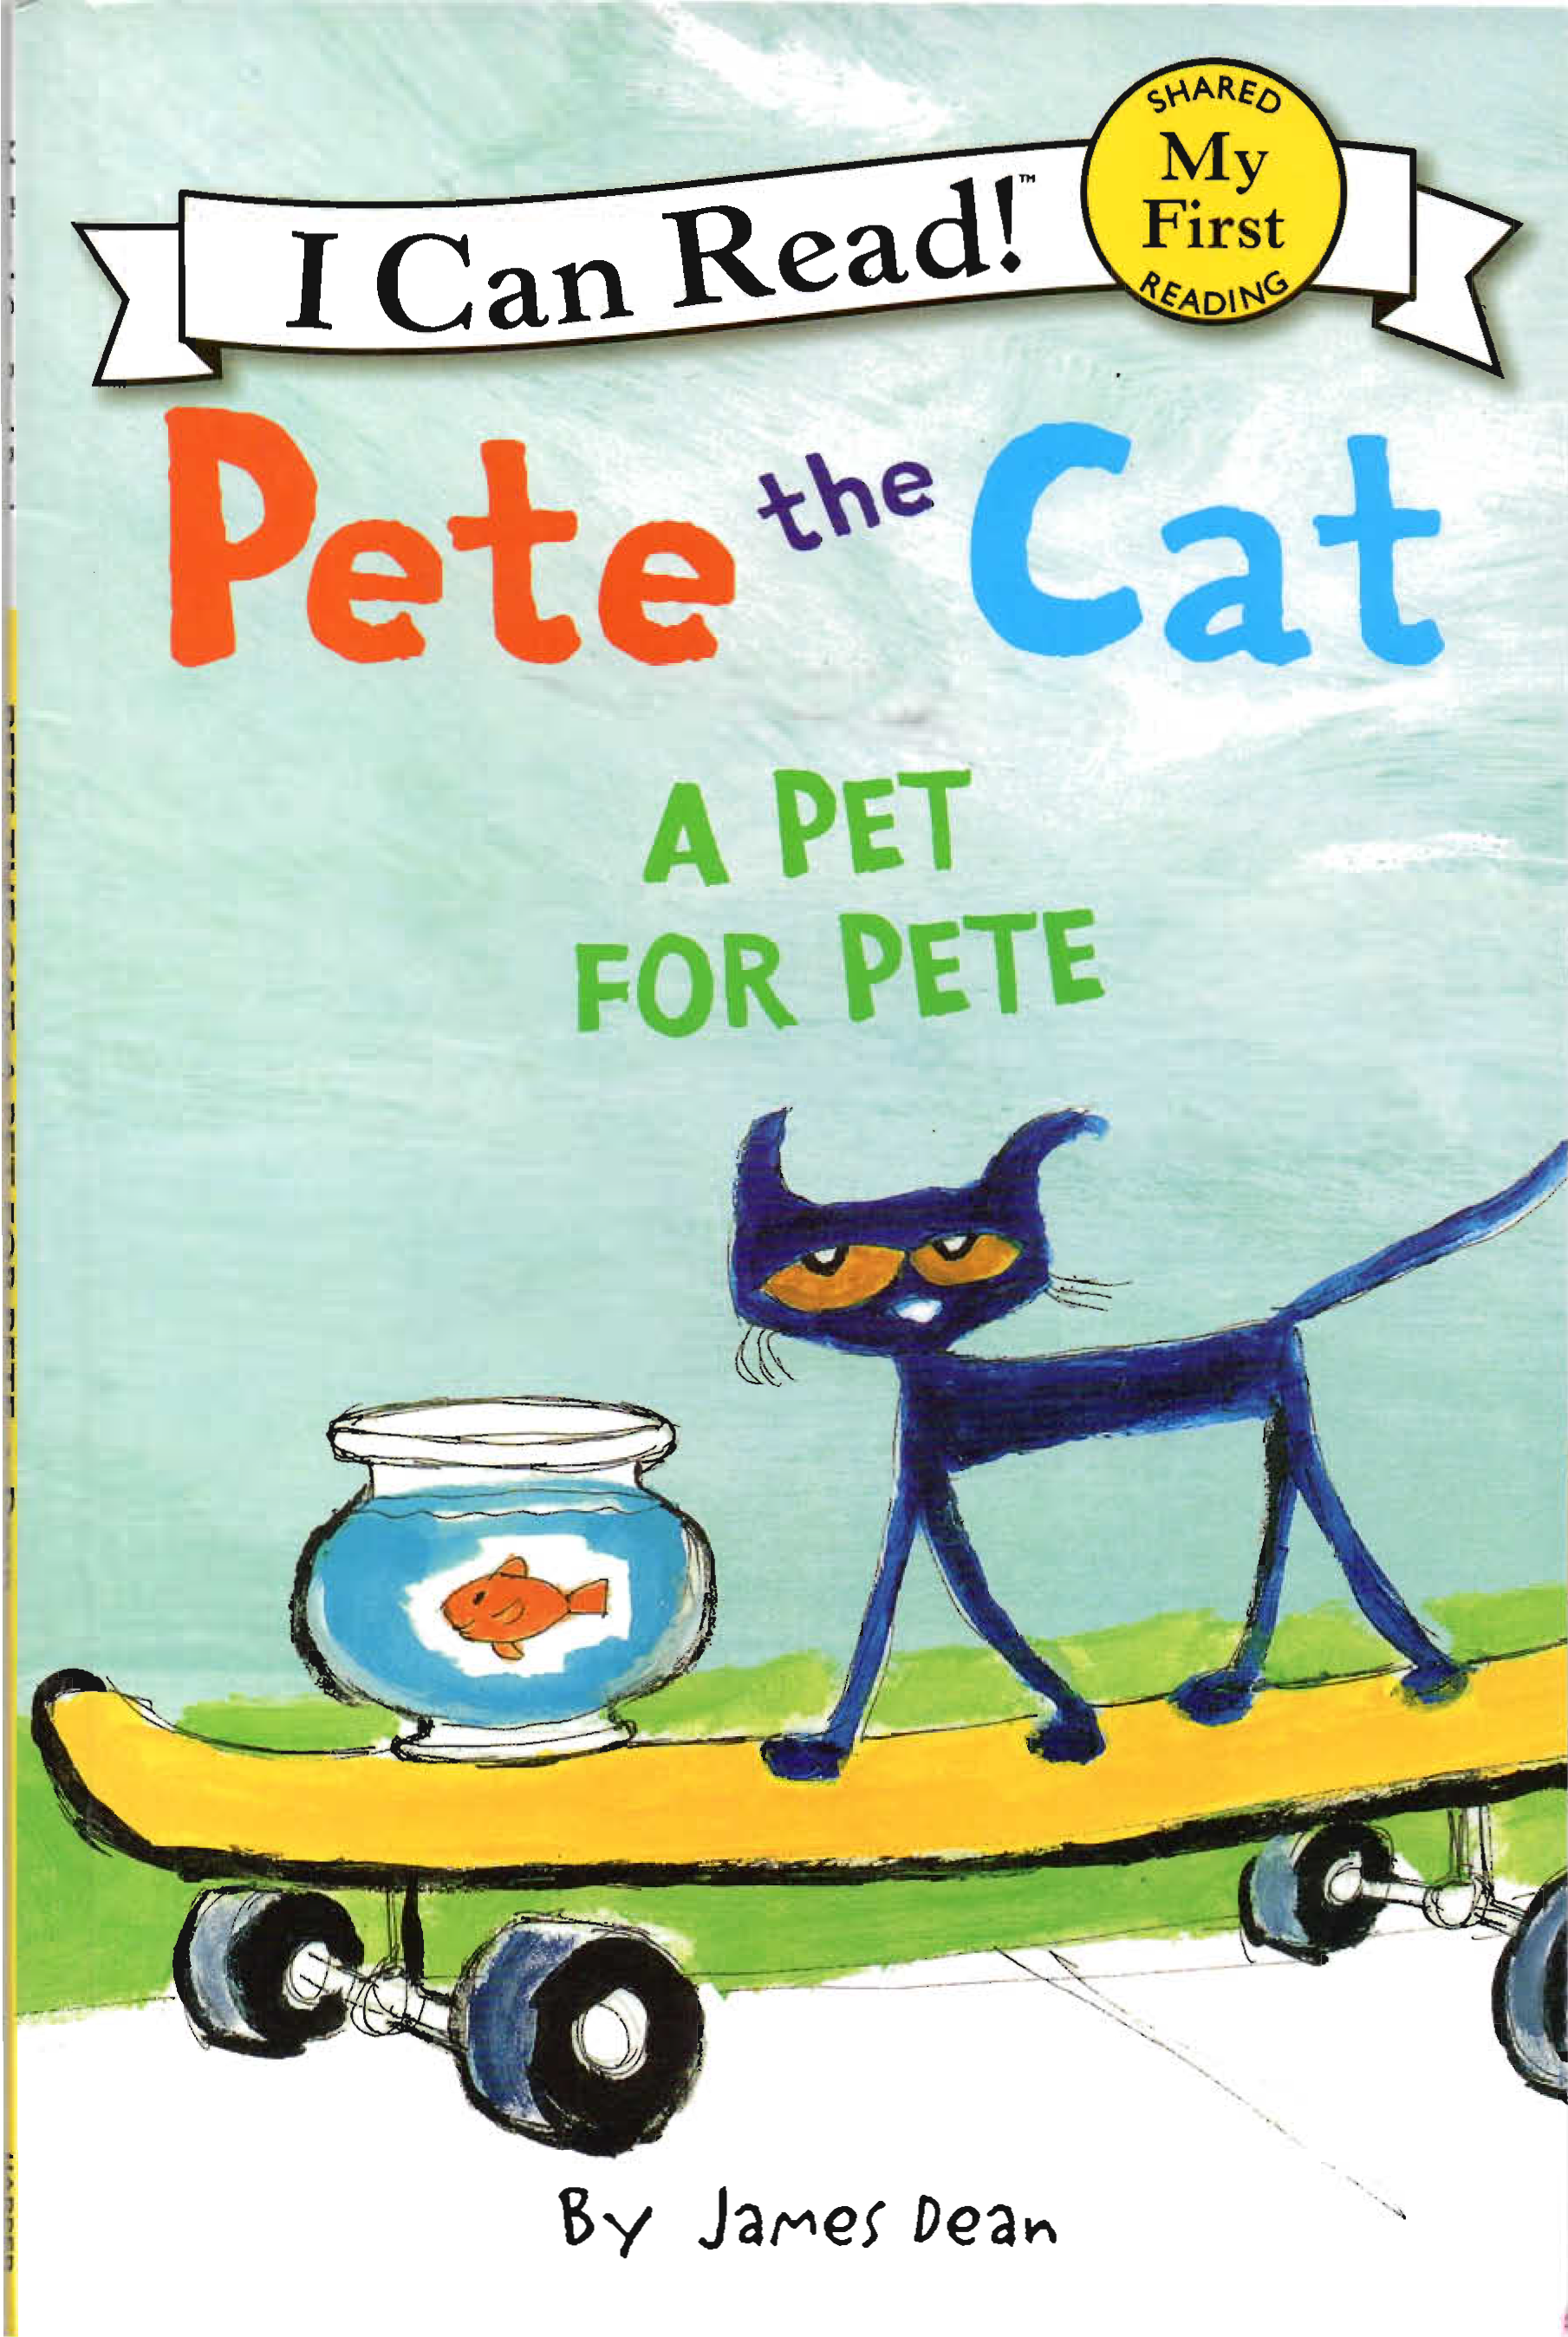 Pet reading 5. Pete the Cat. Pet the Cat обложка. Pete a Cat super Pete. Pete the Cat читать на русском.